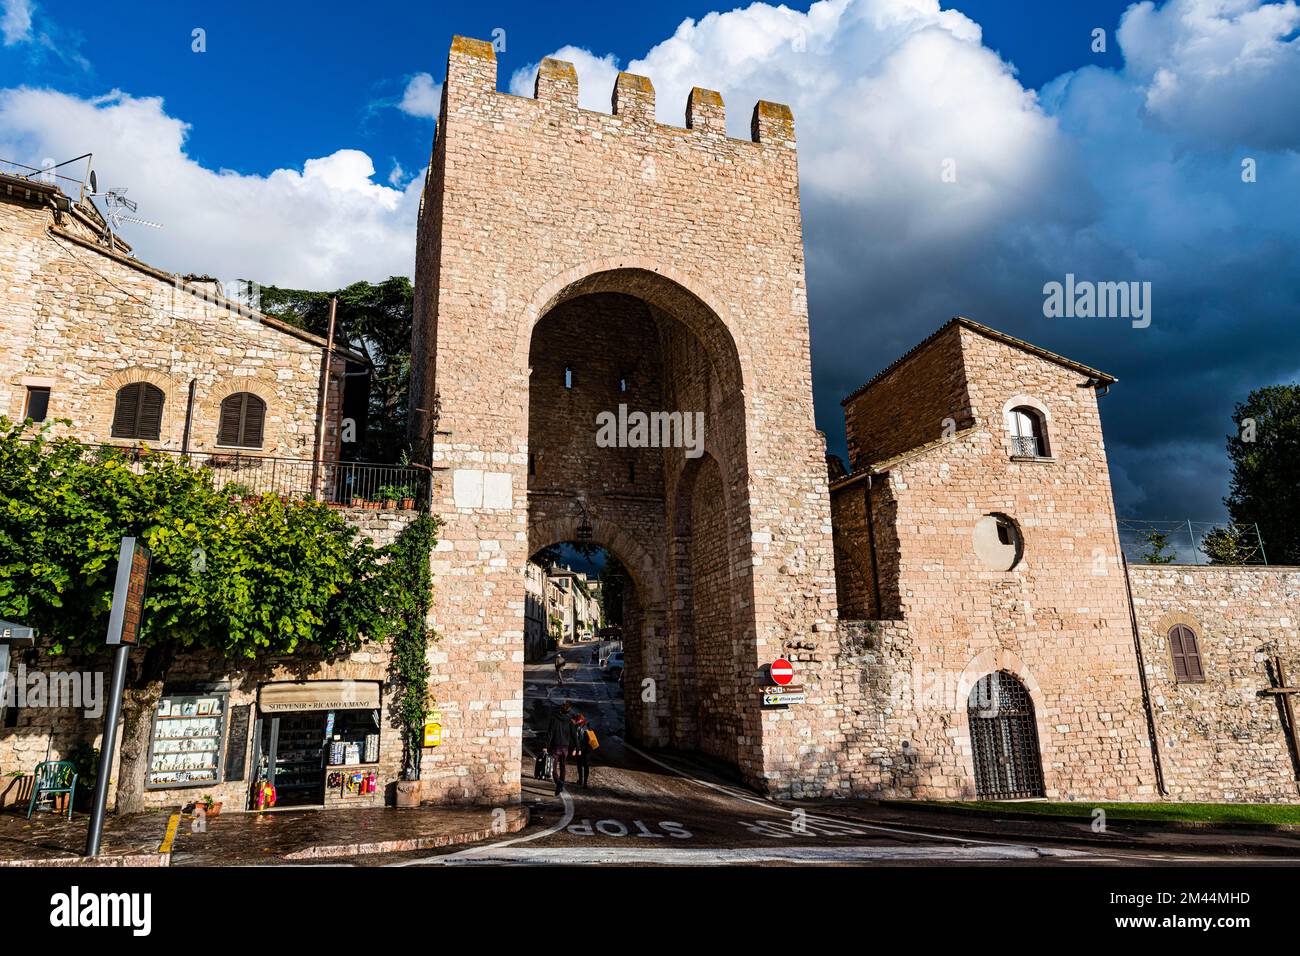 Entrée au site du patrimoine mondial de l'UNESCO Assise, Italie Banque D'Images